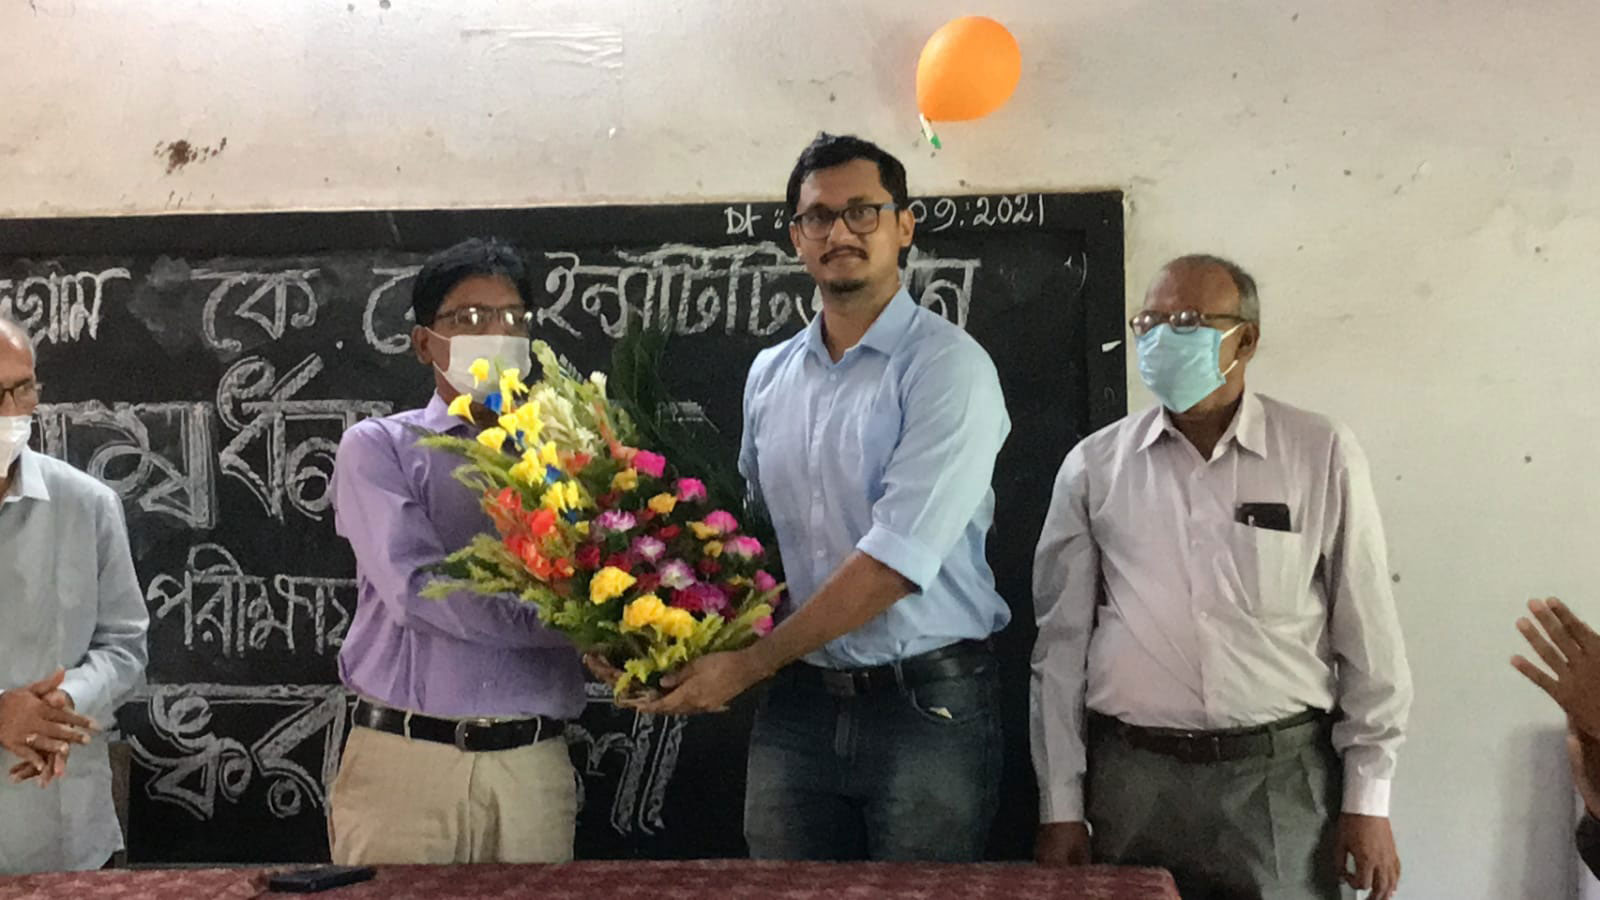 Subhankar Bala UPSC : সিভিল সার্ভিস পরীক্ষায় রাজ্যে প্রথম স্থান পাওয়া প্রাক্তনীকে সংবর্ধনা দিল কুমুদকুমারী ইনস্টিটিউশন - West Bengal News 24